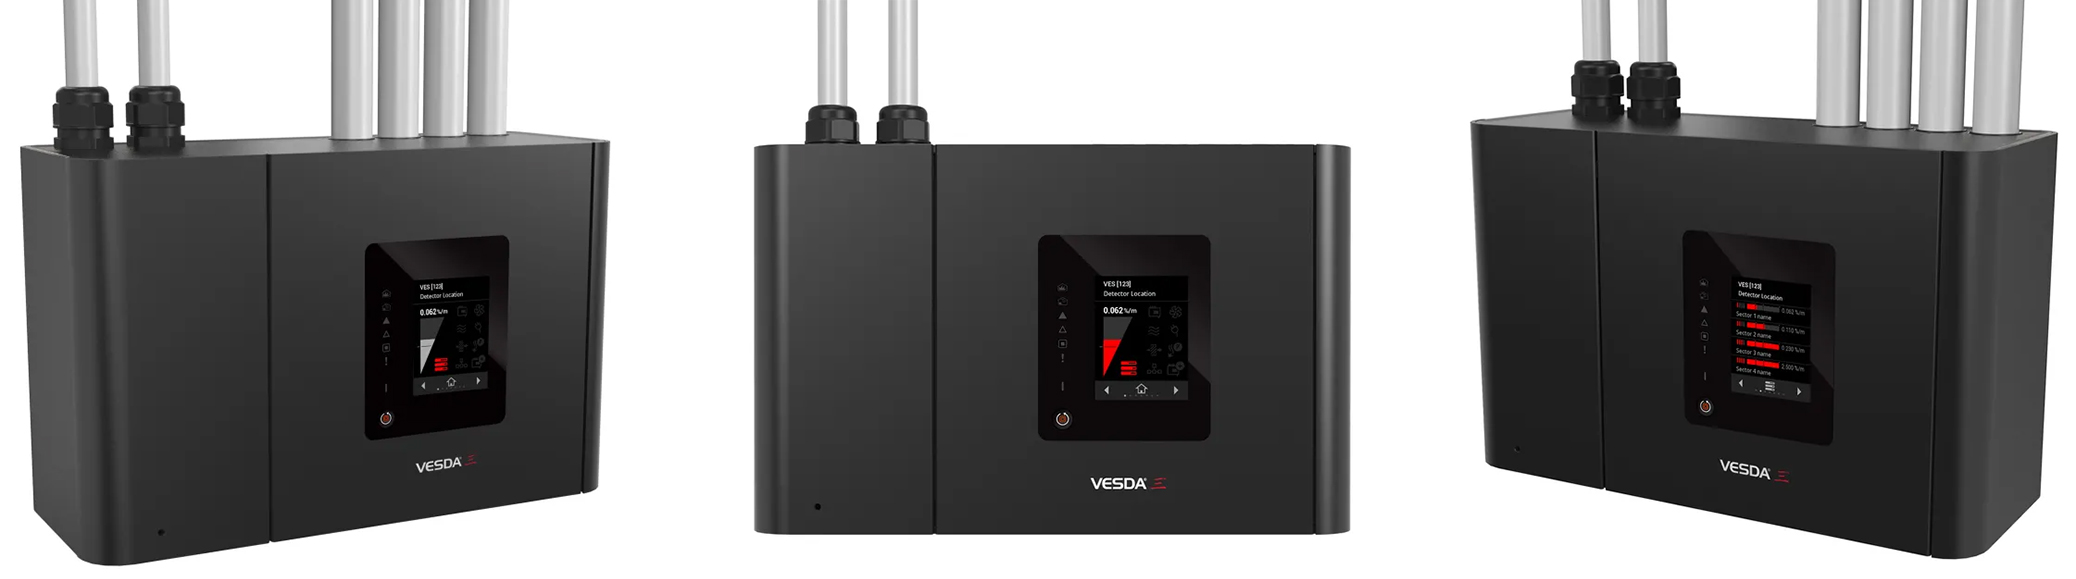 吸气式感烟火灾探测器 VESDA-E VES